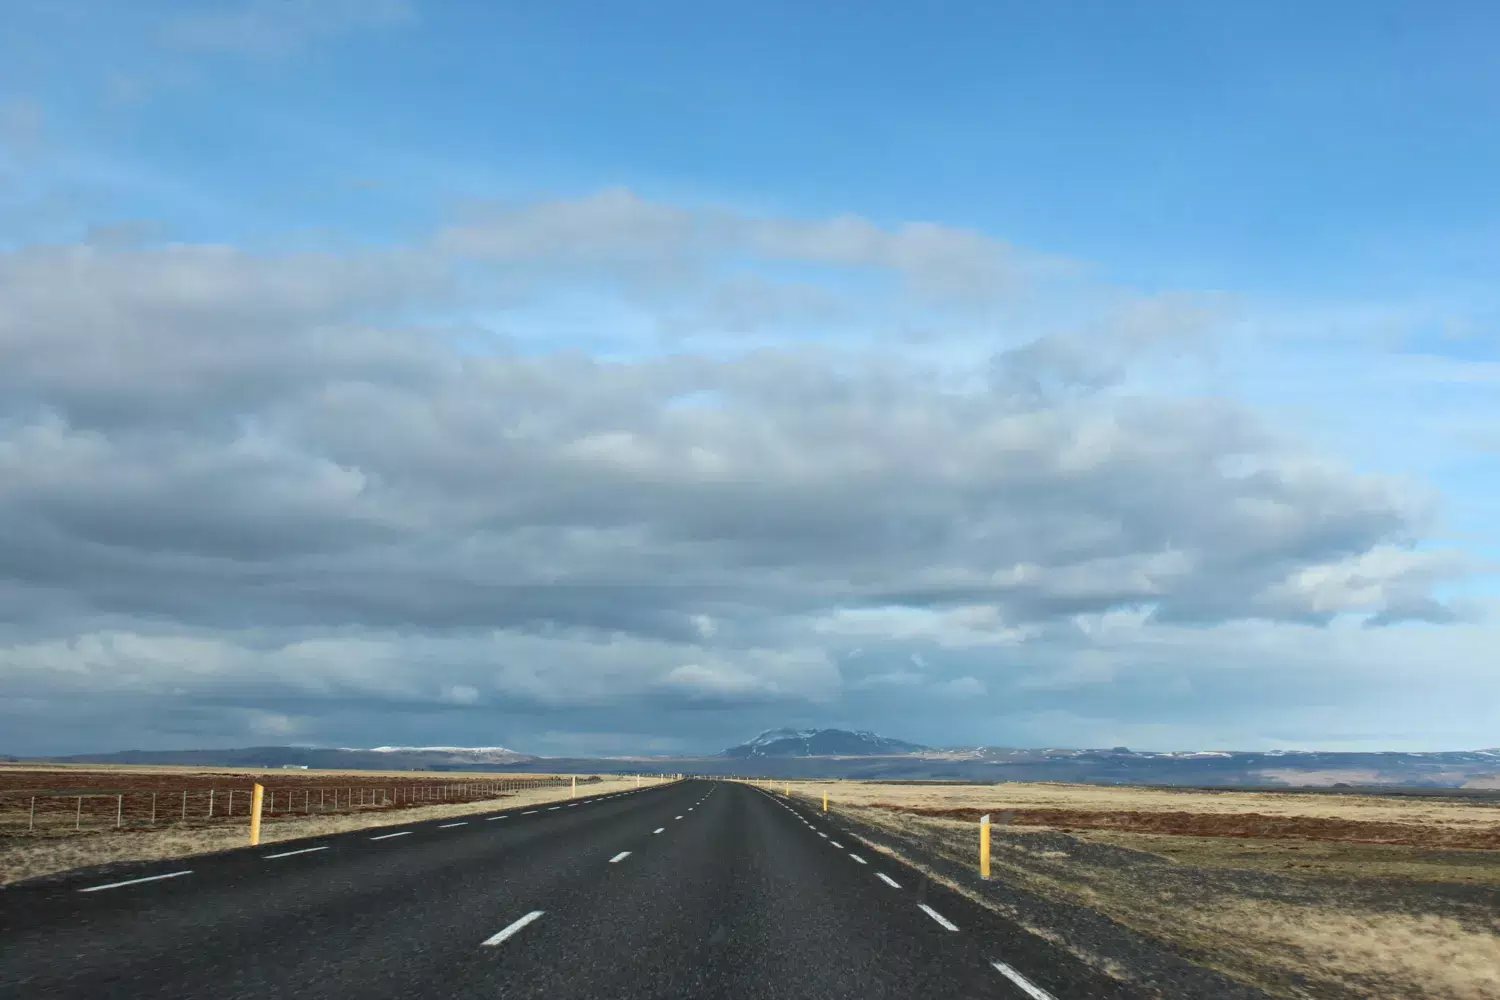 En öde bilväg i ett kargs landskap